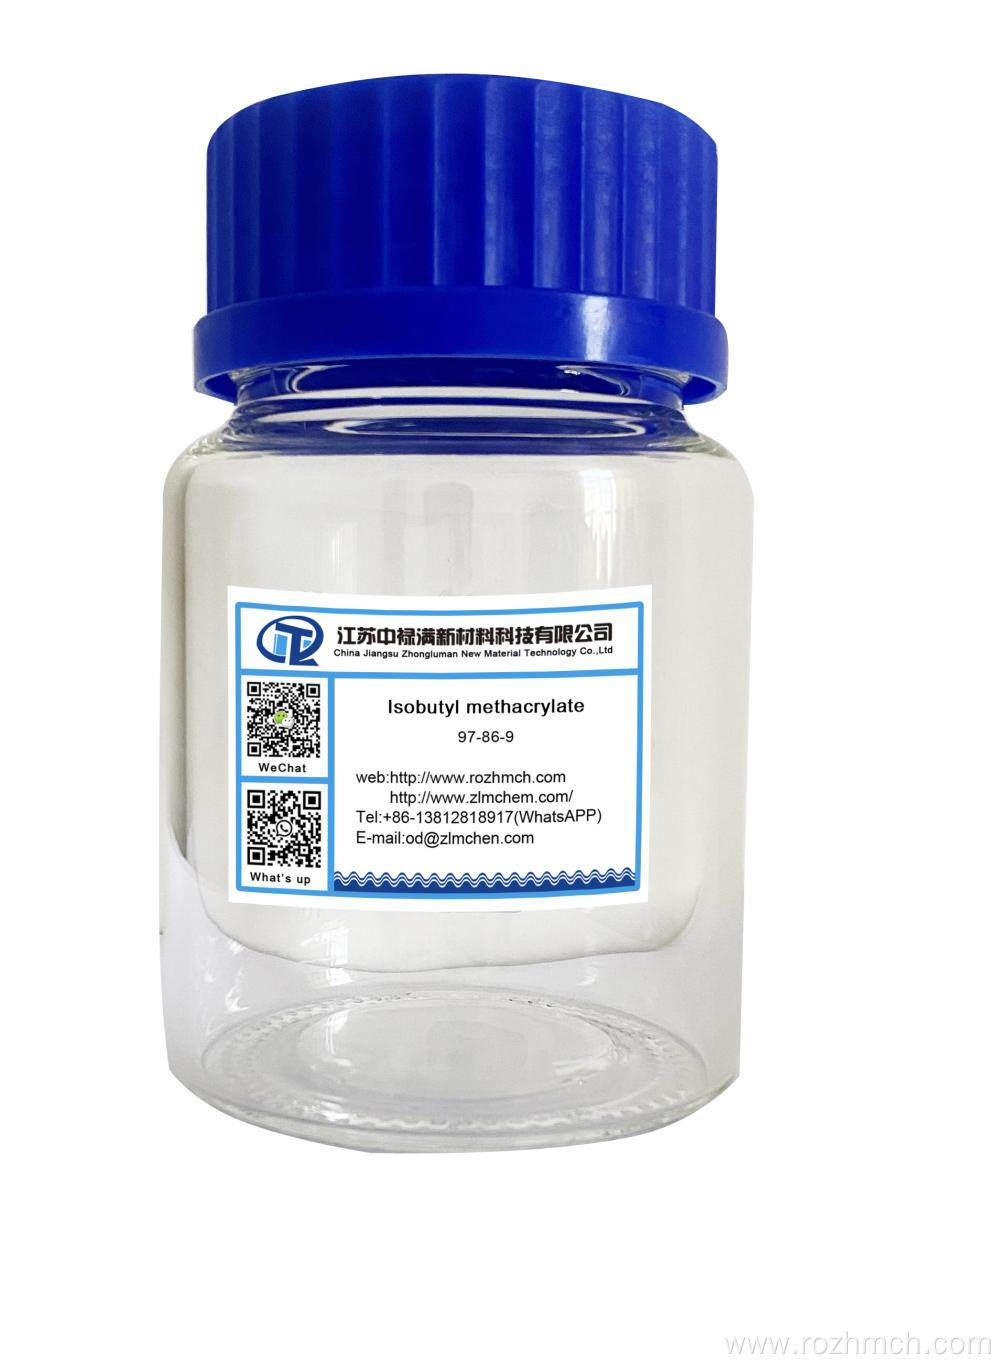 Isobutyl methacrylate CAS 97-86-9